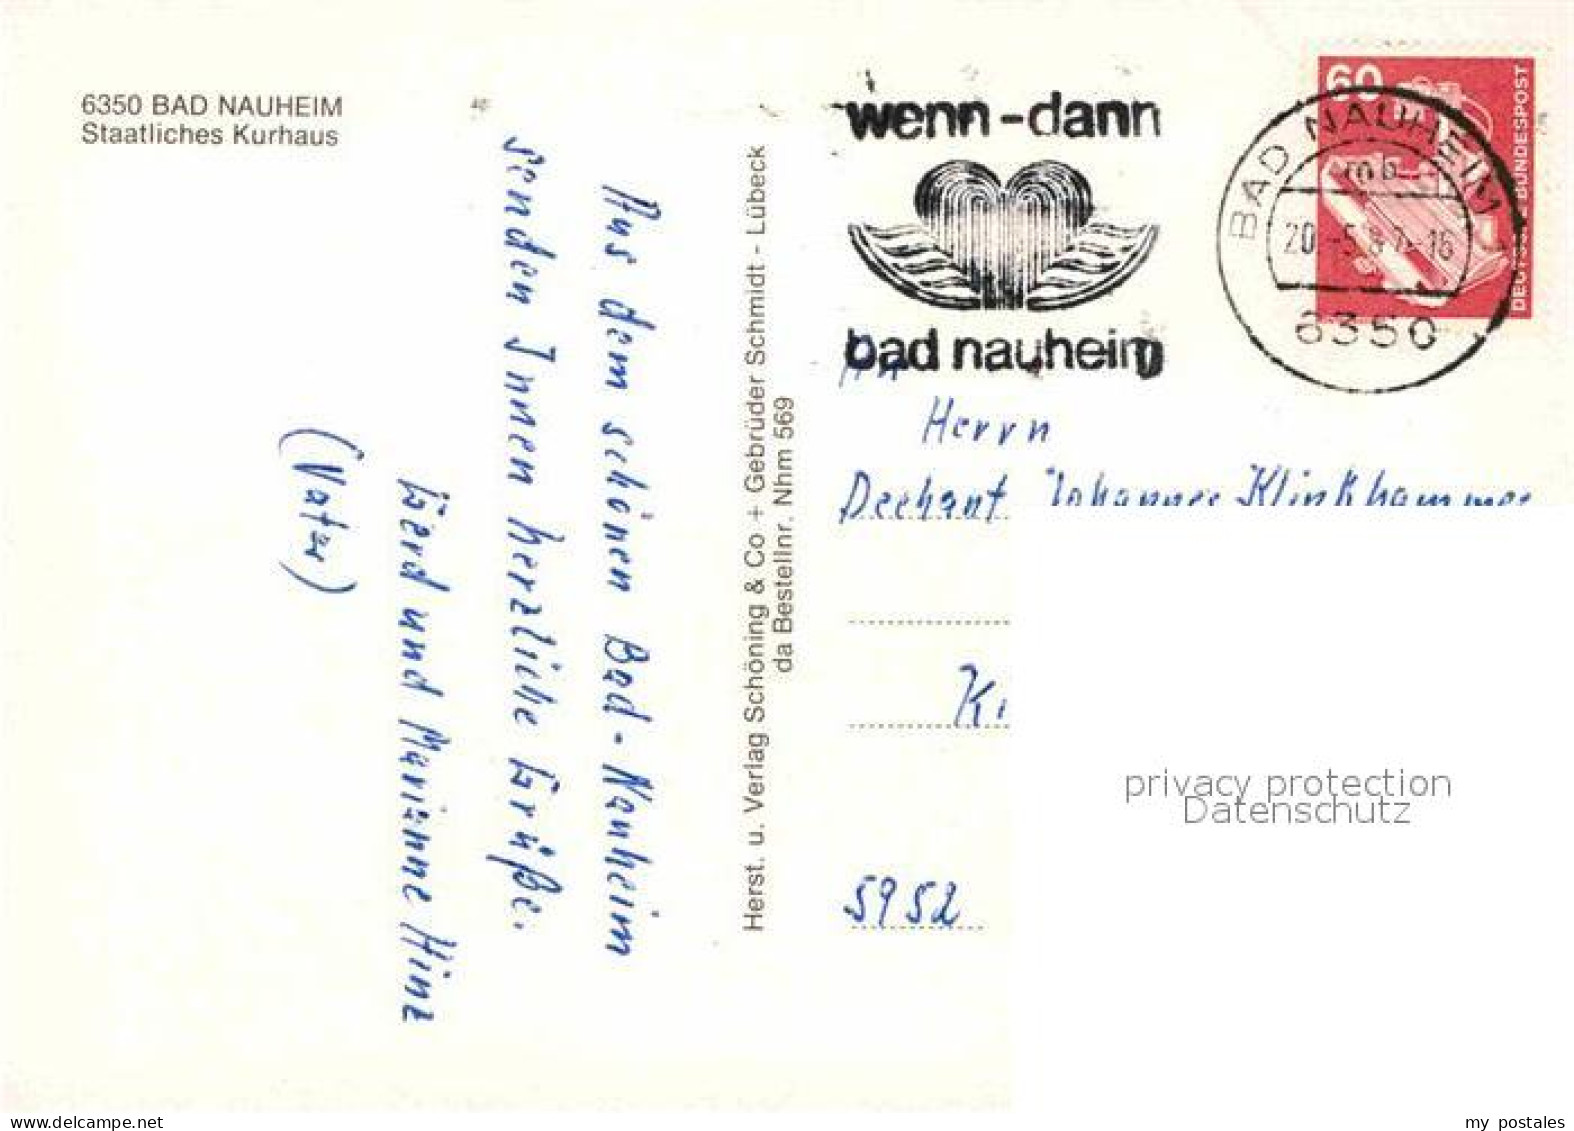 72694636 Bad Nauheim Kurhaus Bad Nauheim - Bad Nauheim